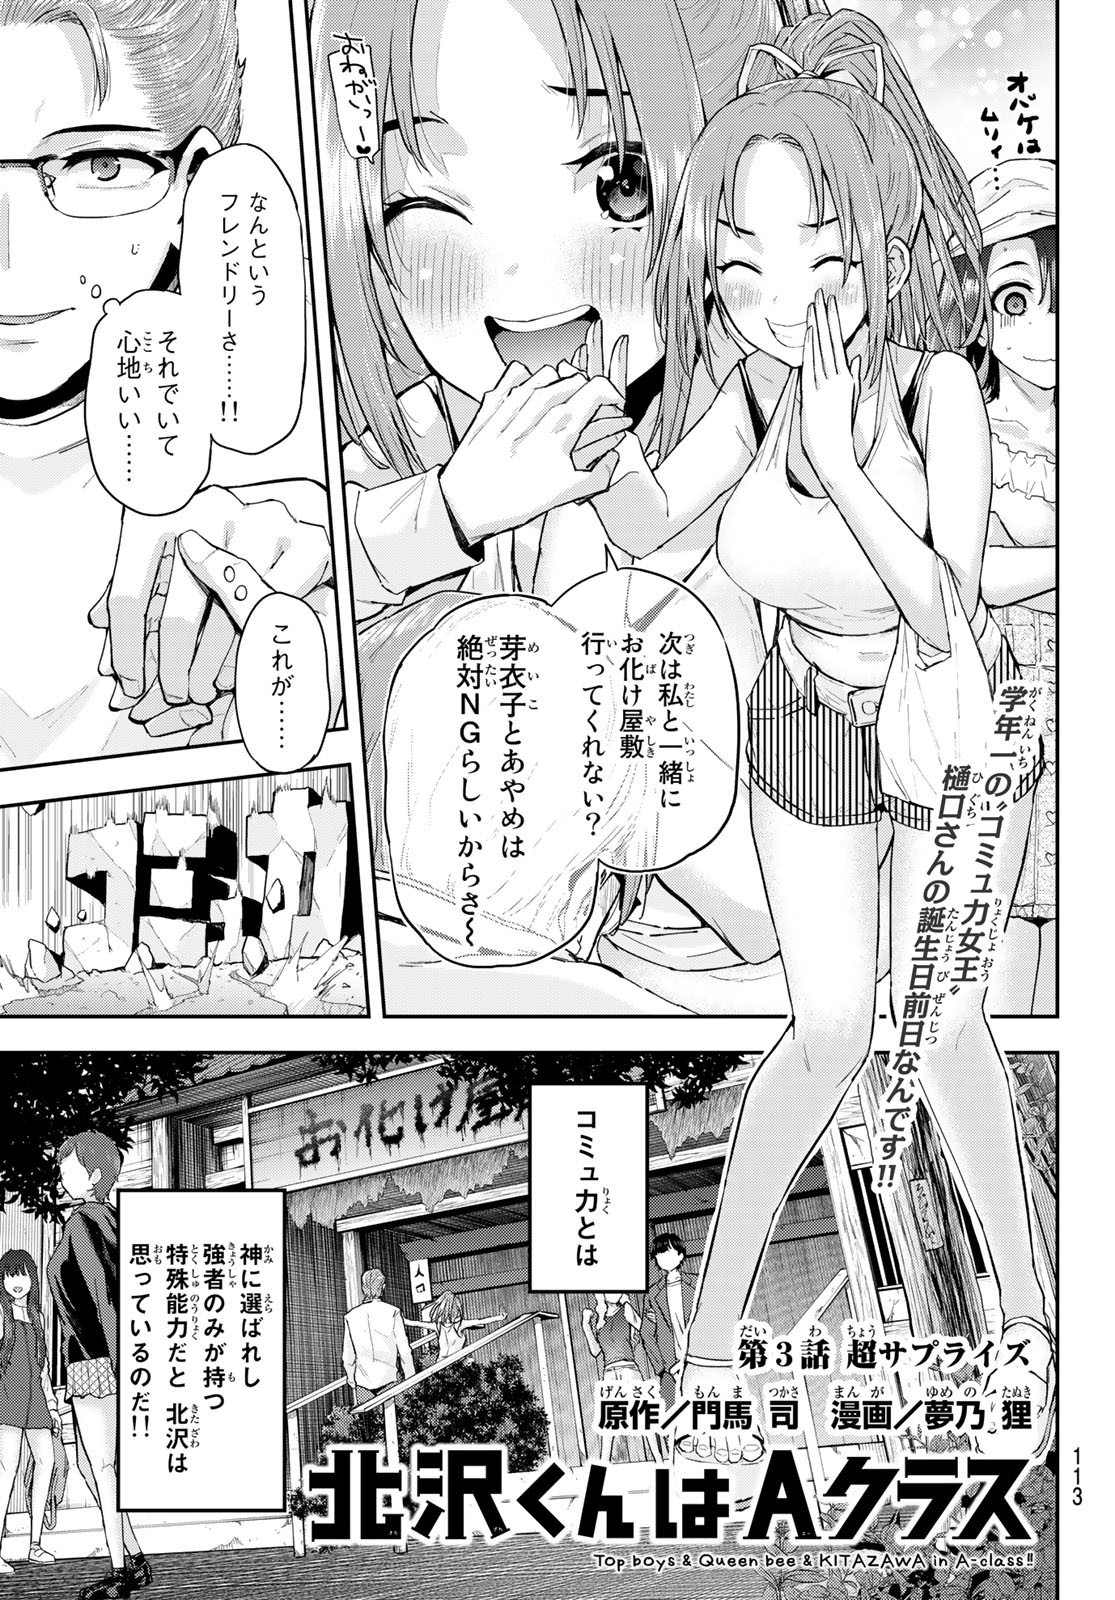 Kitazawa-kun wa A Class - Chapter 003 - Page 3